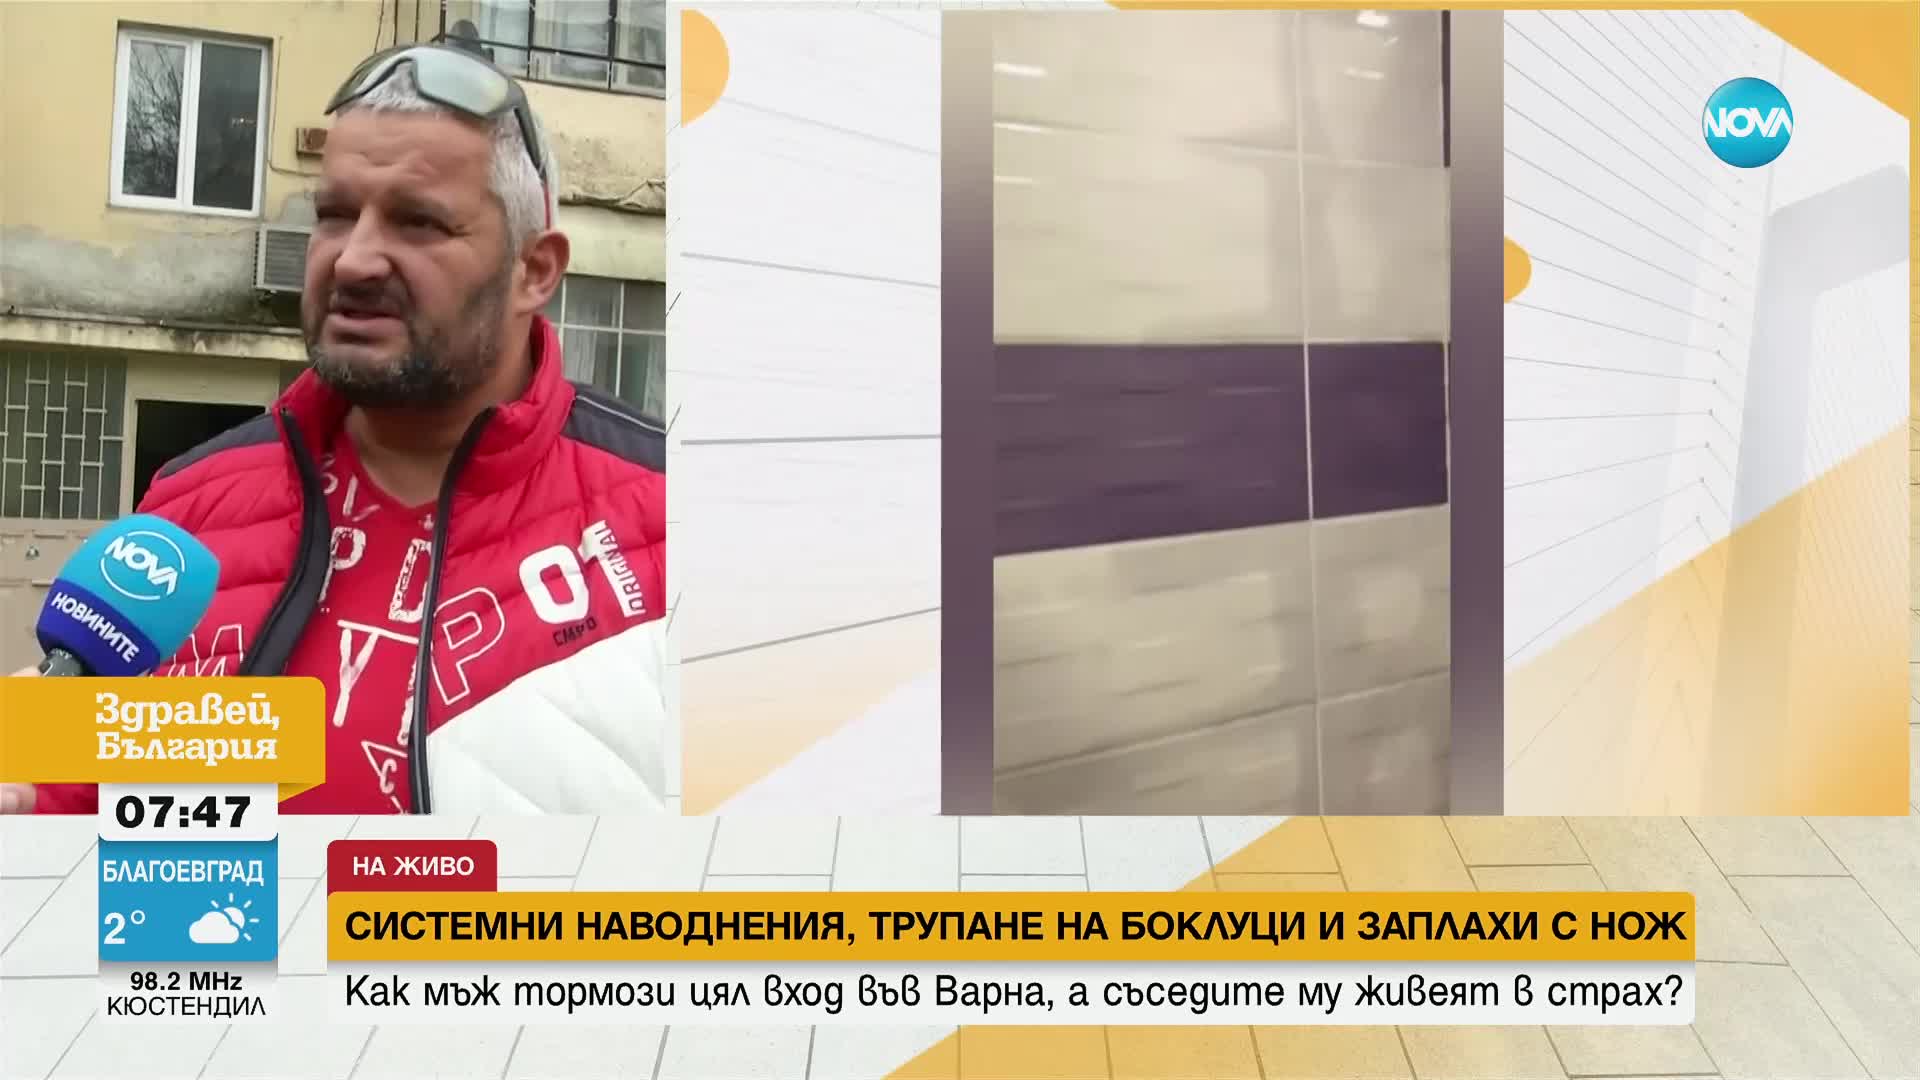 Системни наводнения, трупане на боклуци и заплахи с нож: Как мъж тормози цял вход във Варна?